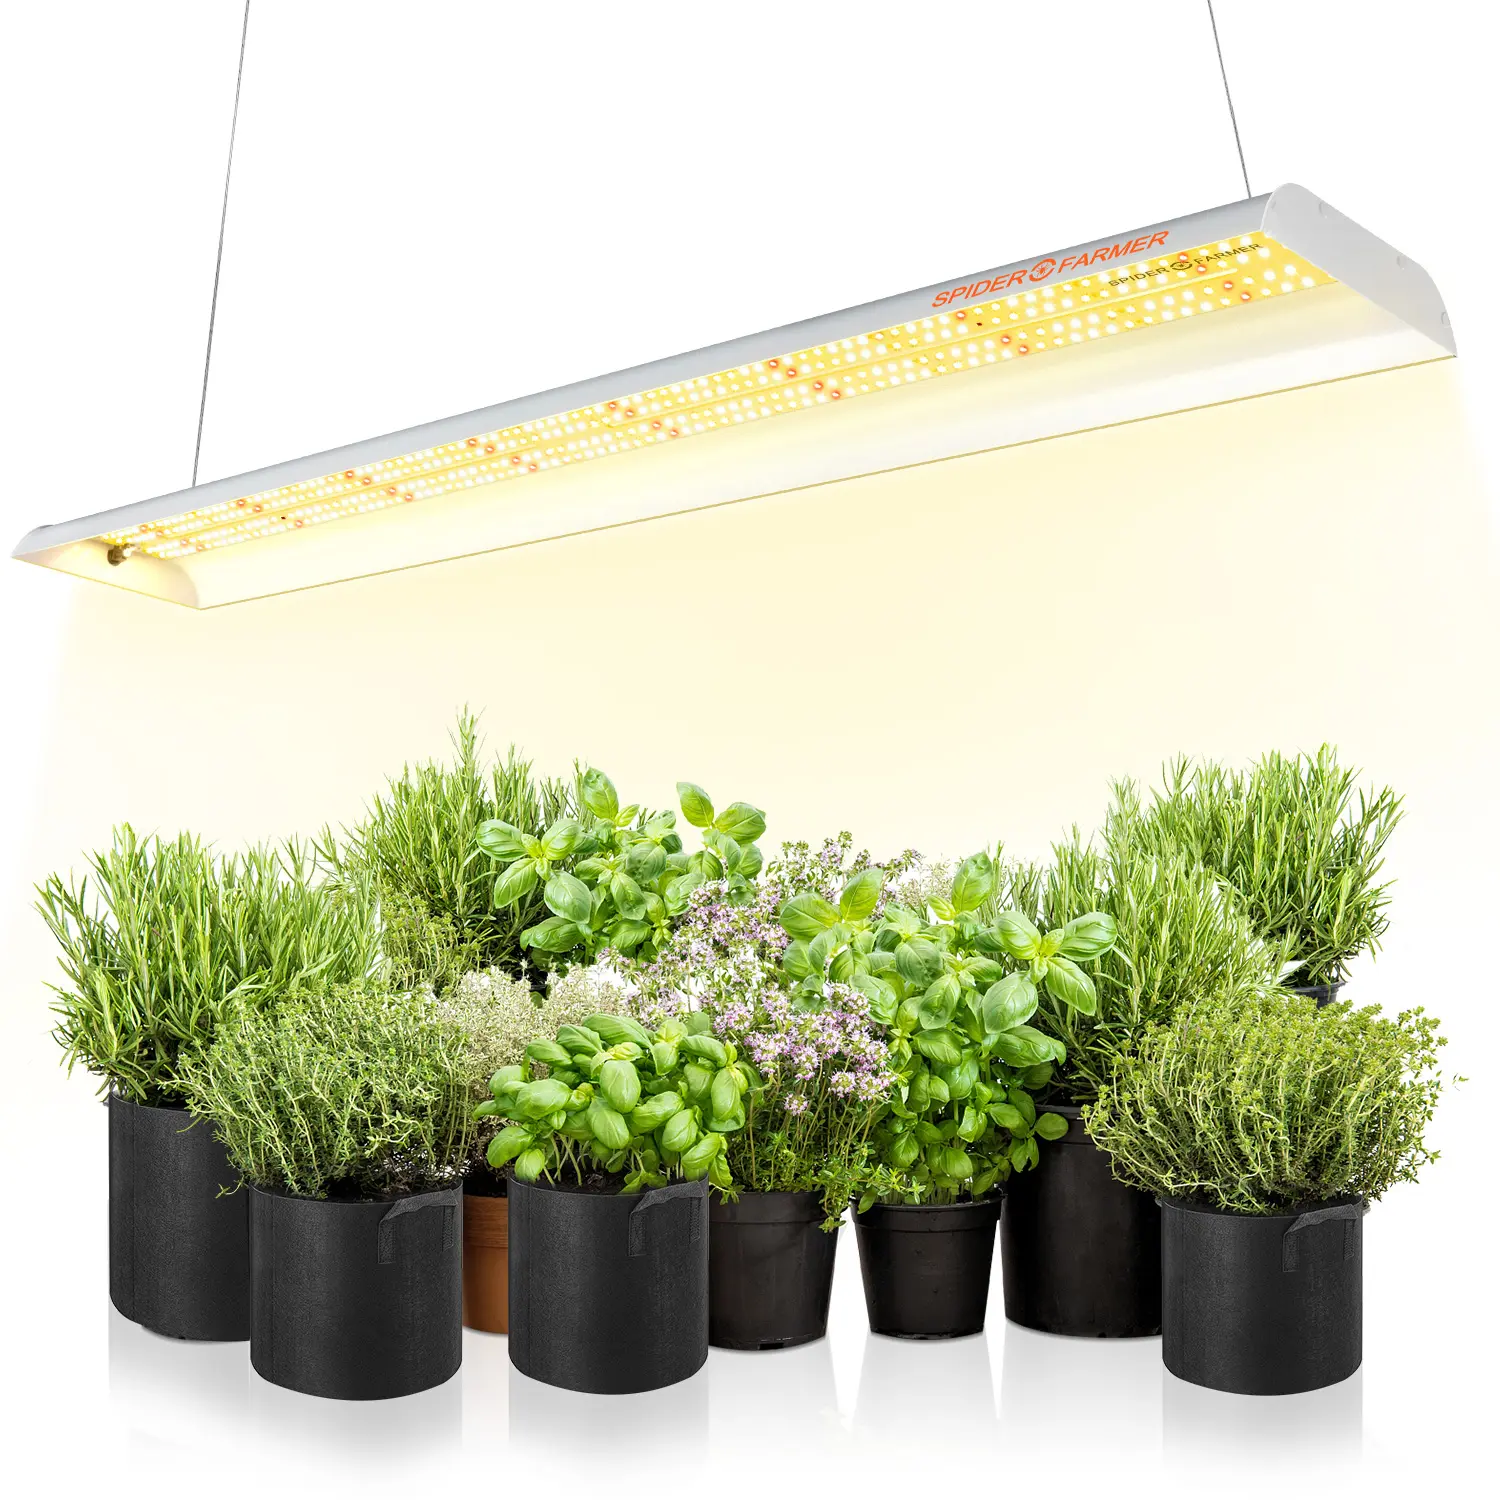 Spider coltivatore SF600 74W spettro completo LED coltiva la luce per la coltivazione di fragole di pomodoro di insalate di microverdi